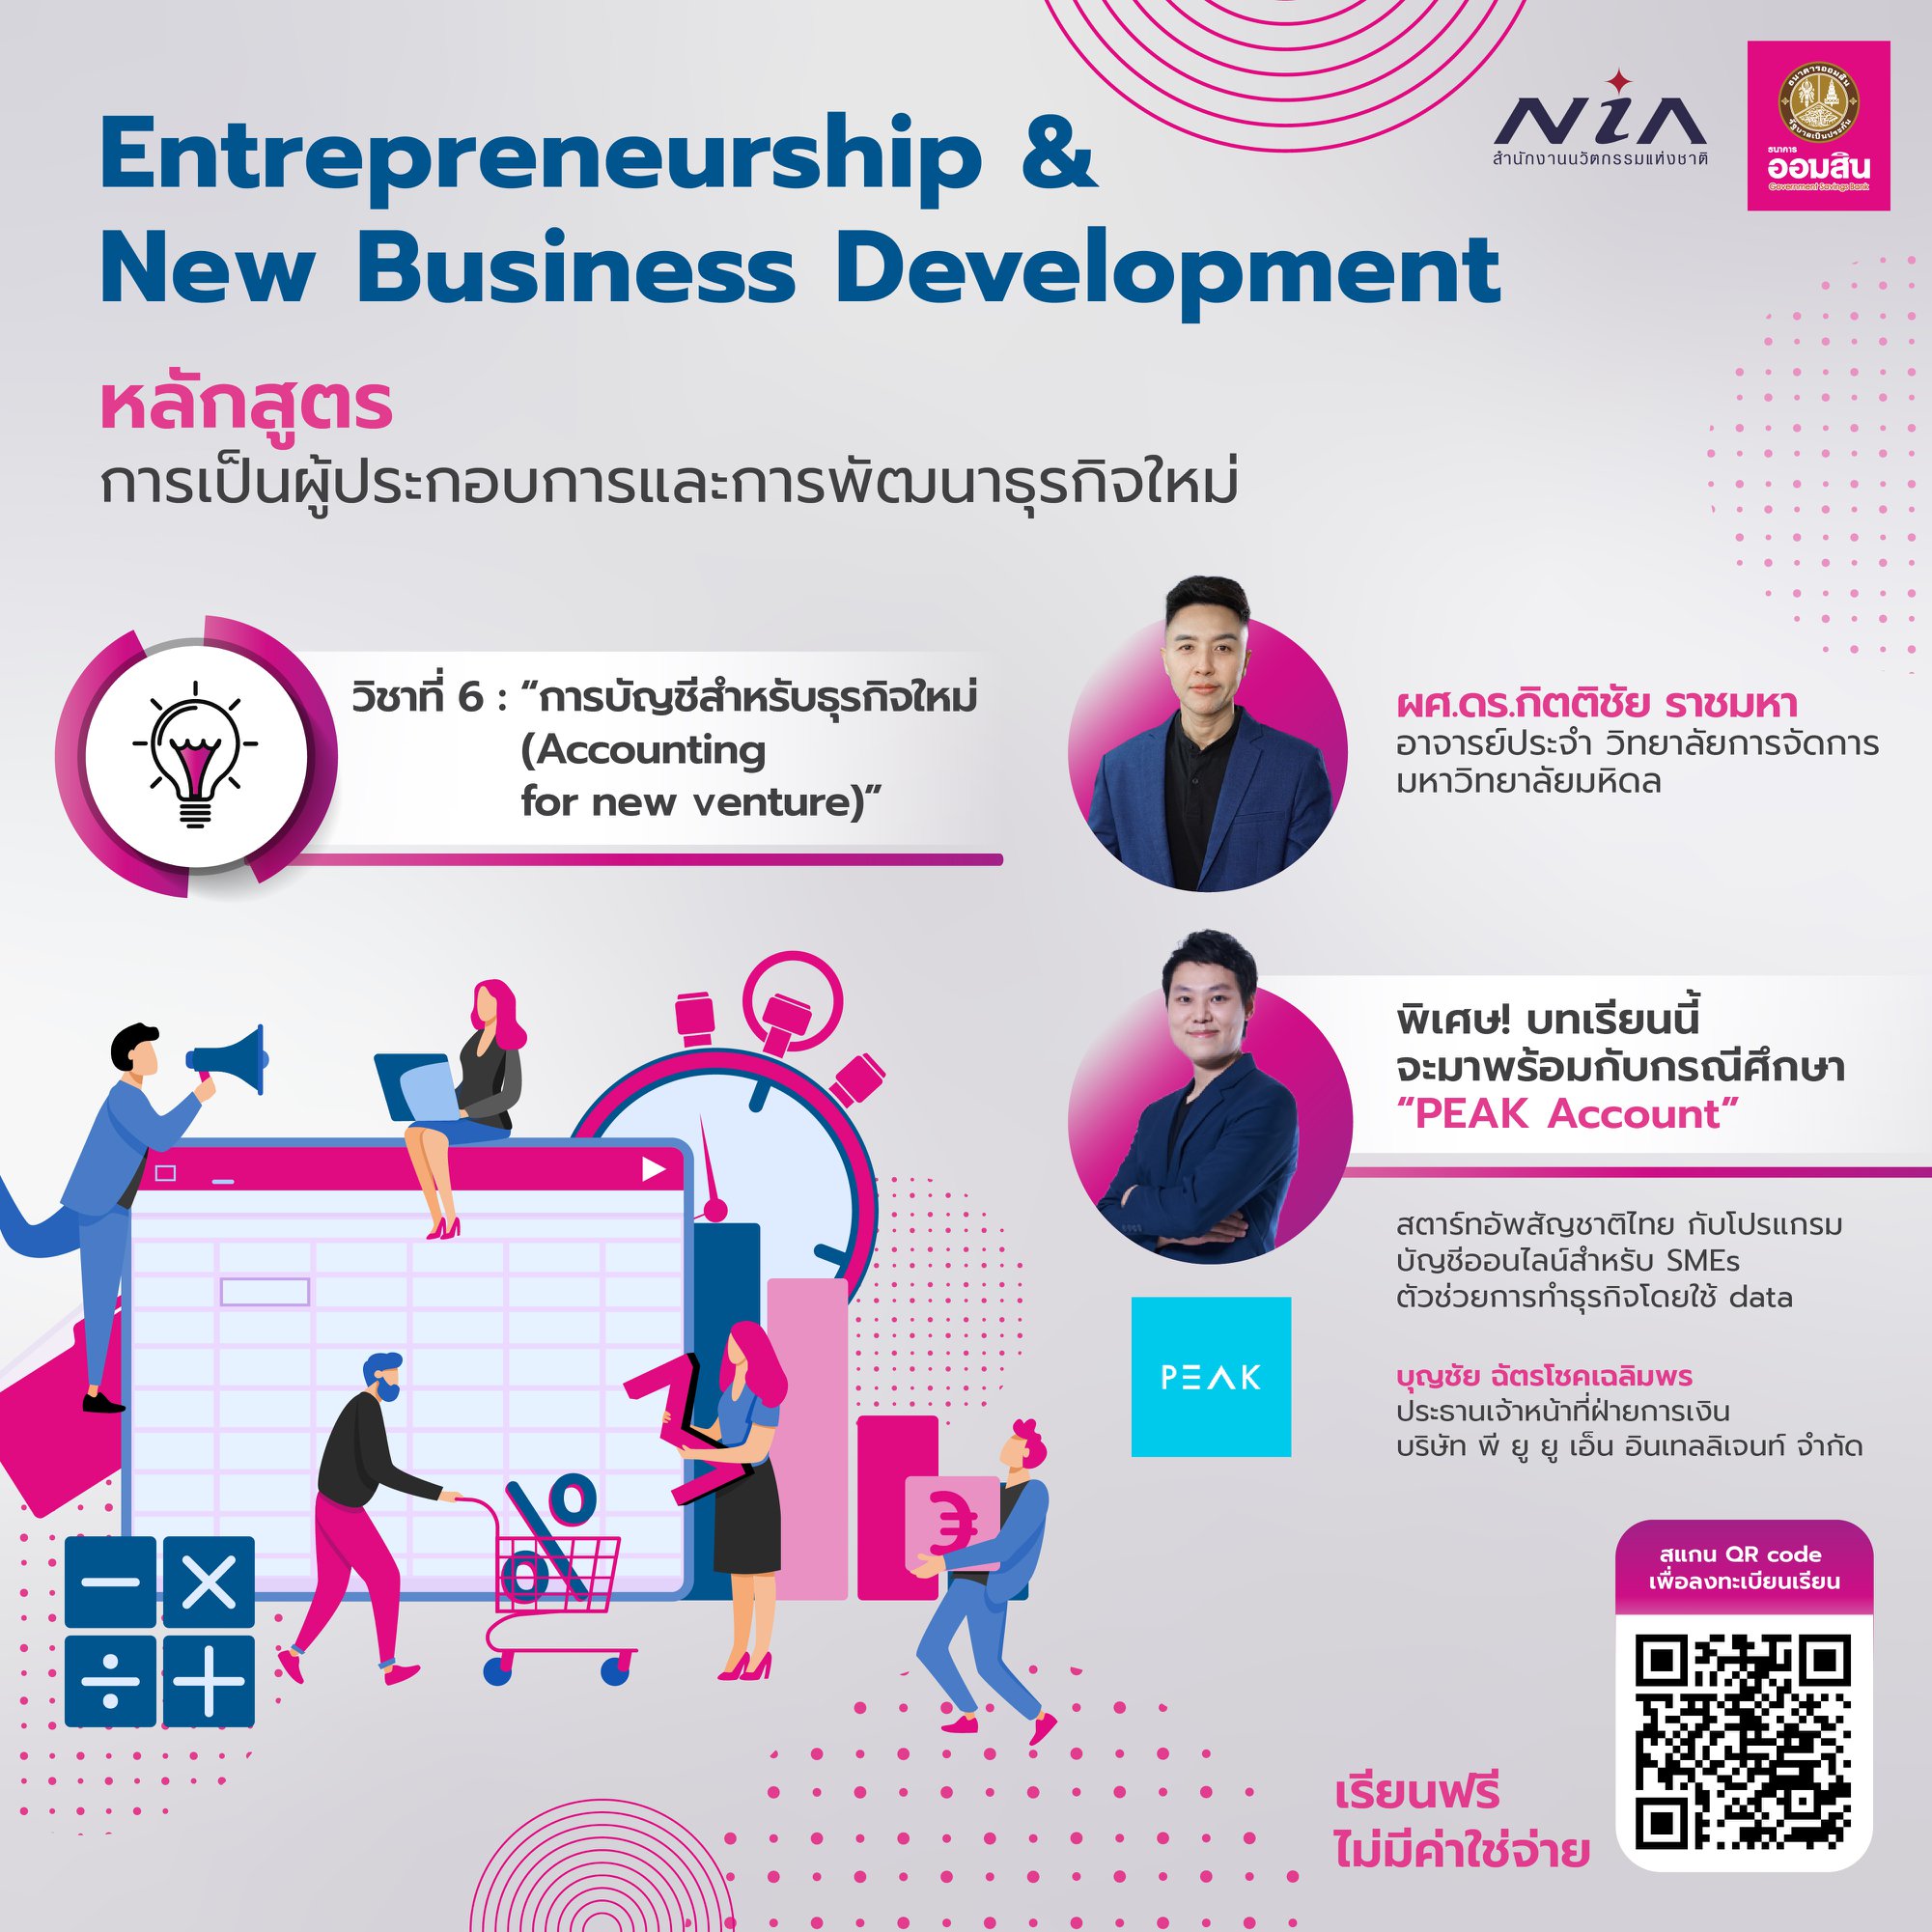 Entrepreneurship & New Business Development